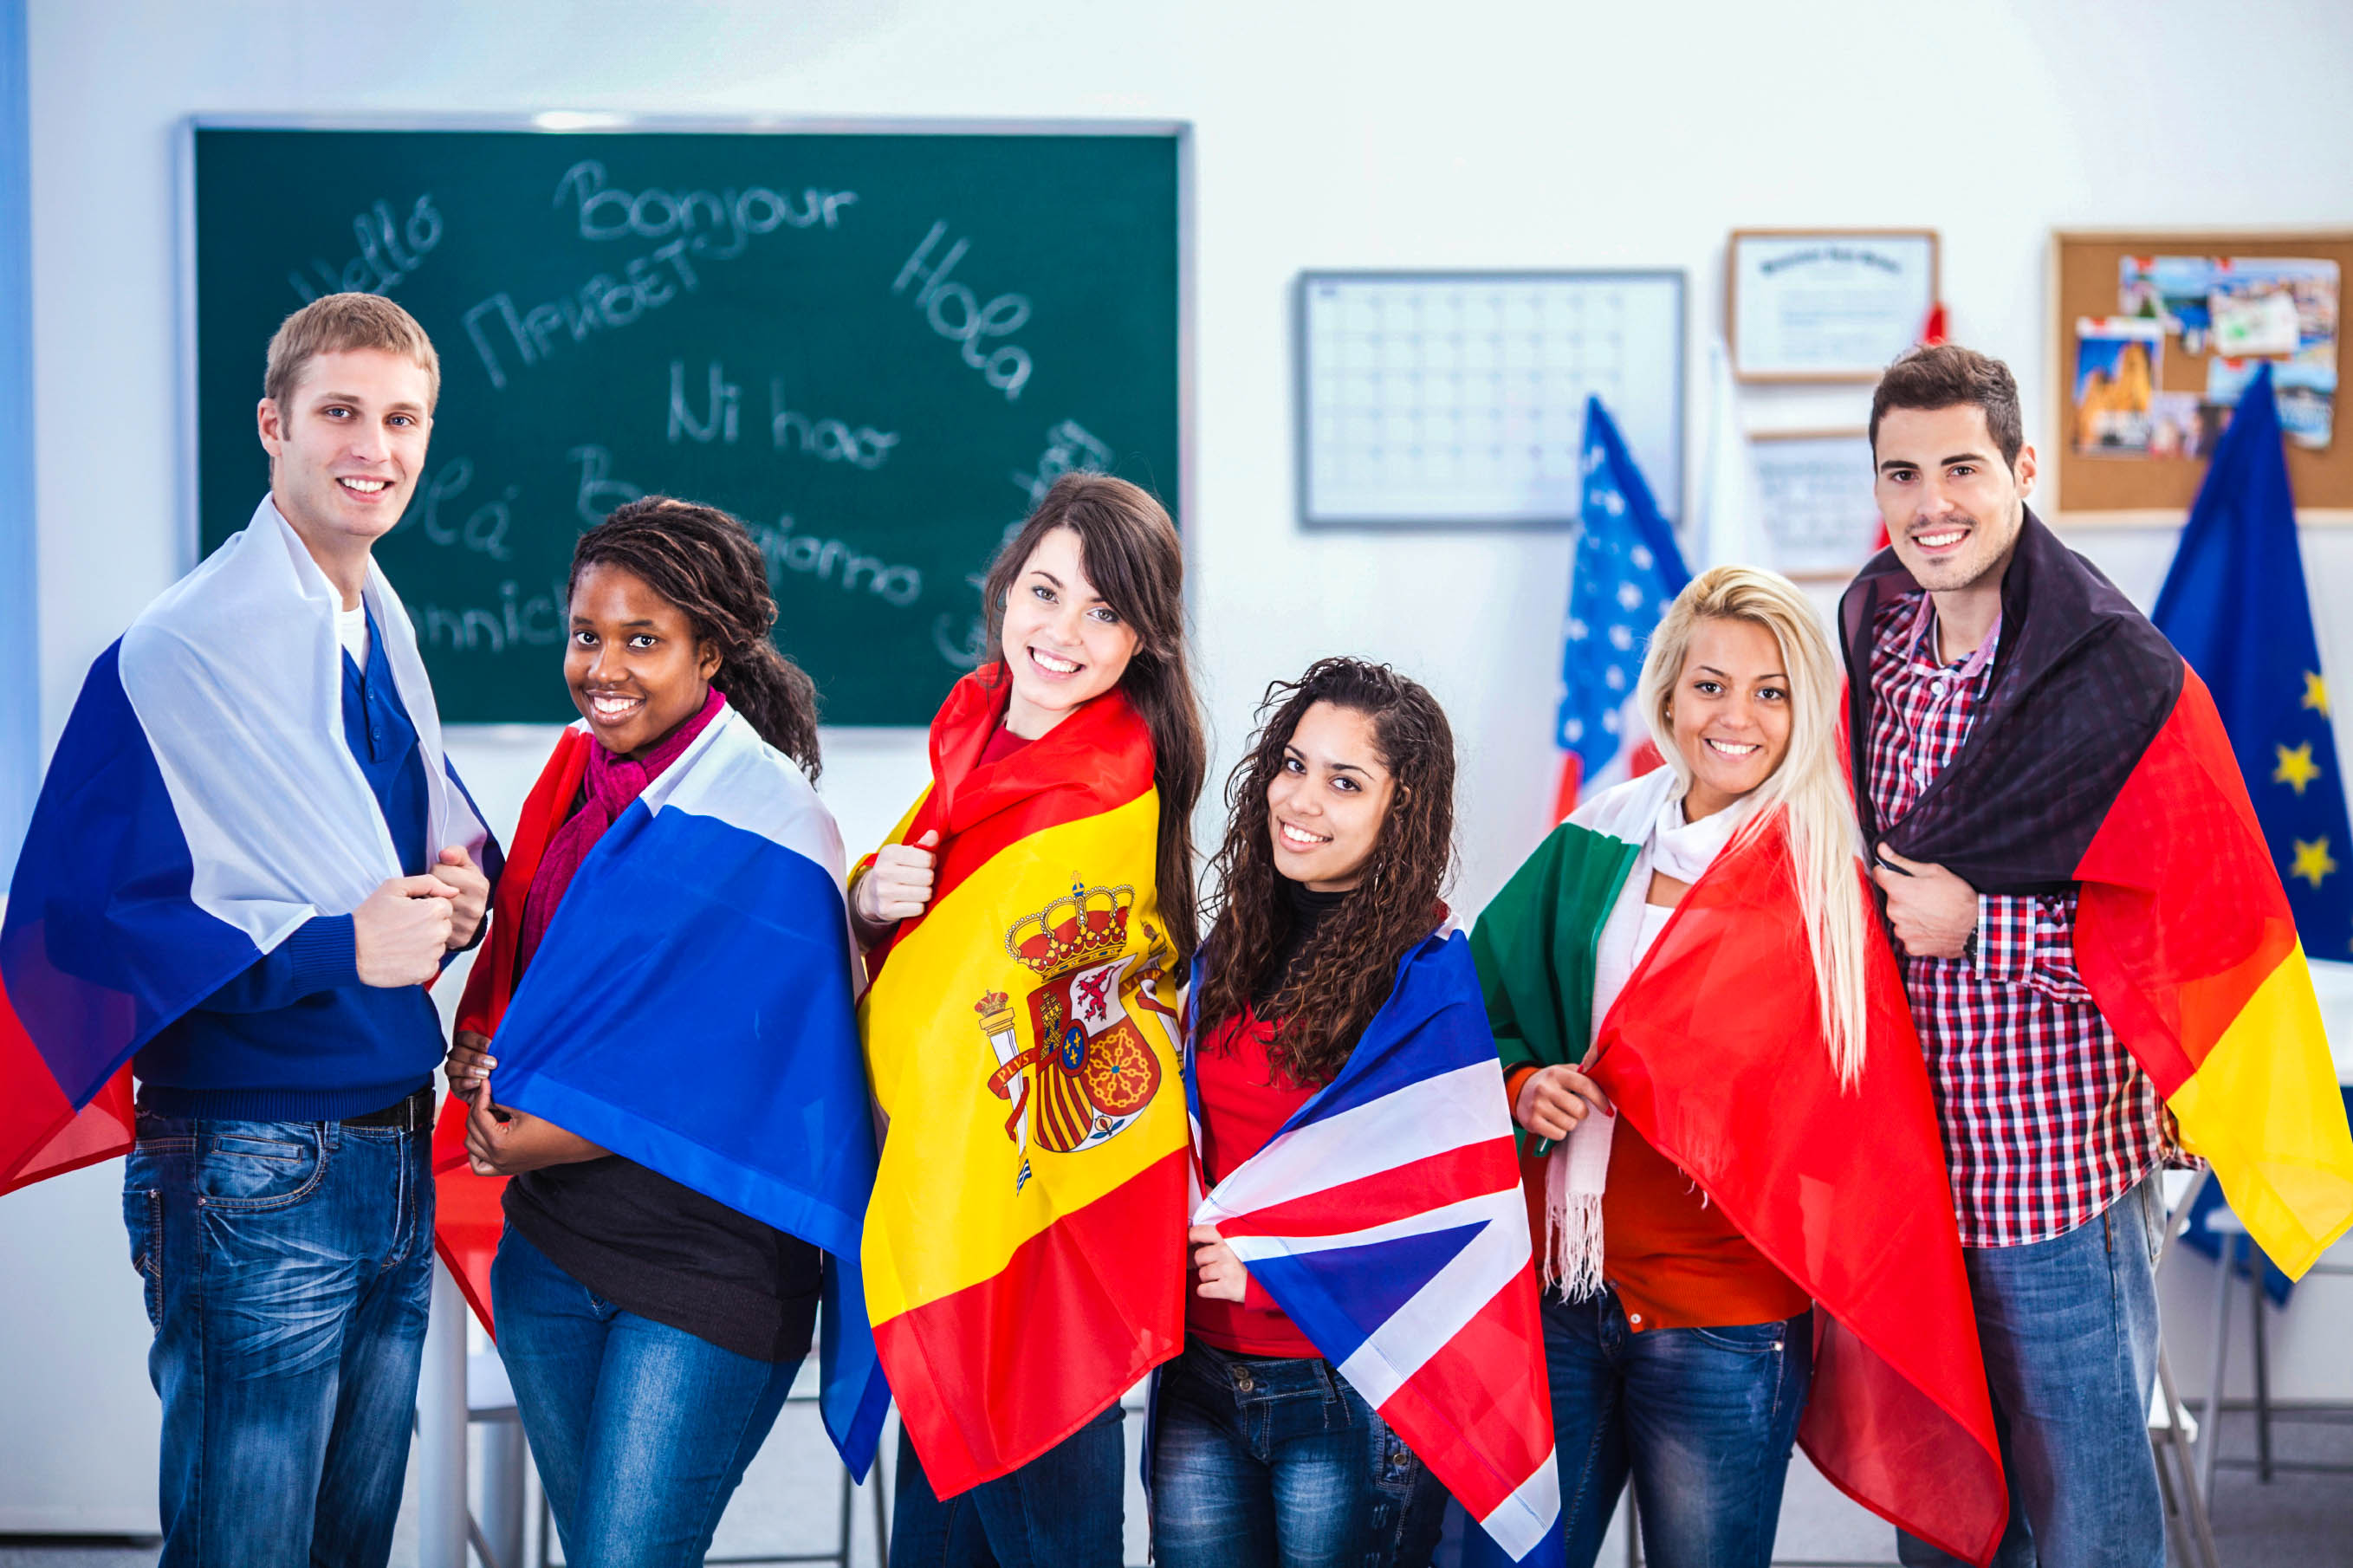 Заграницей или за границей. Студенты иностранцы. Российские студенты за рубежом. Иностранные студенты с флагами. Образование харубежом.